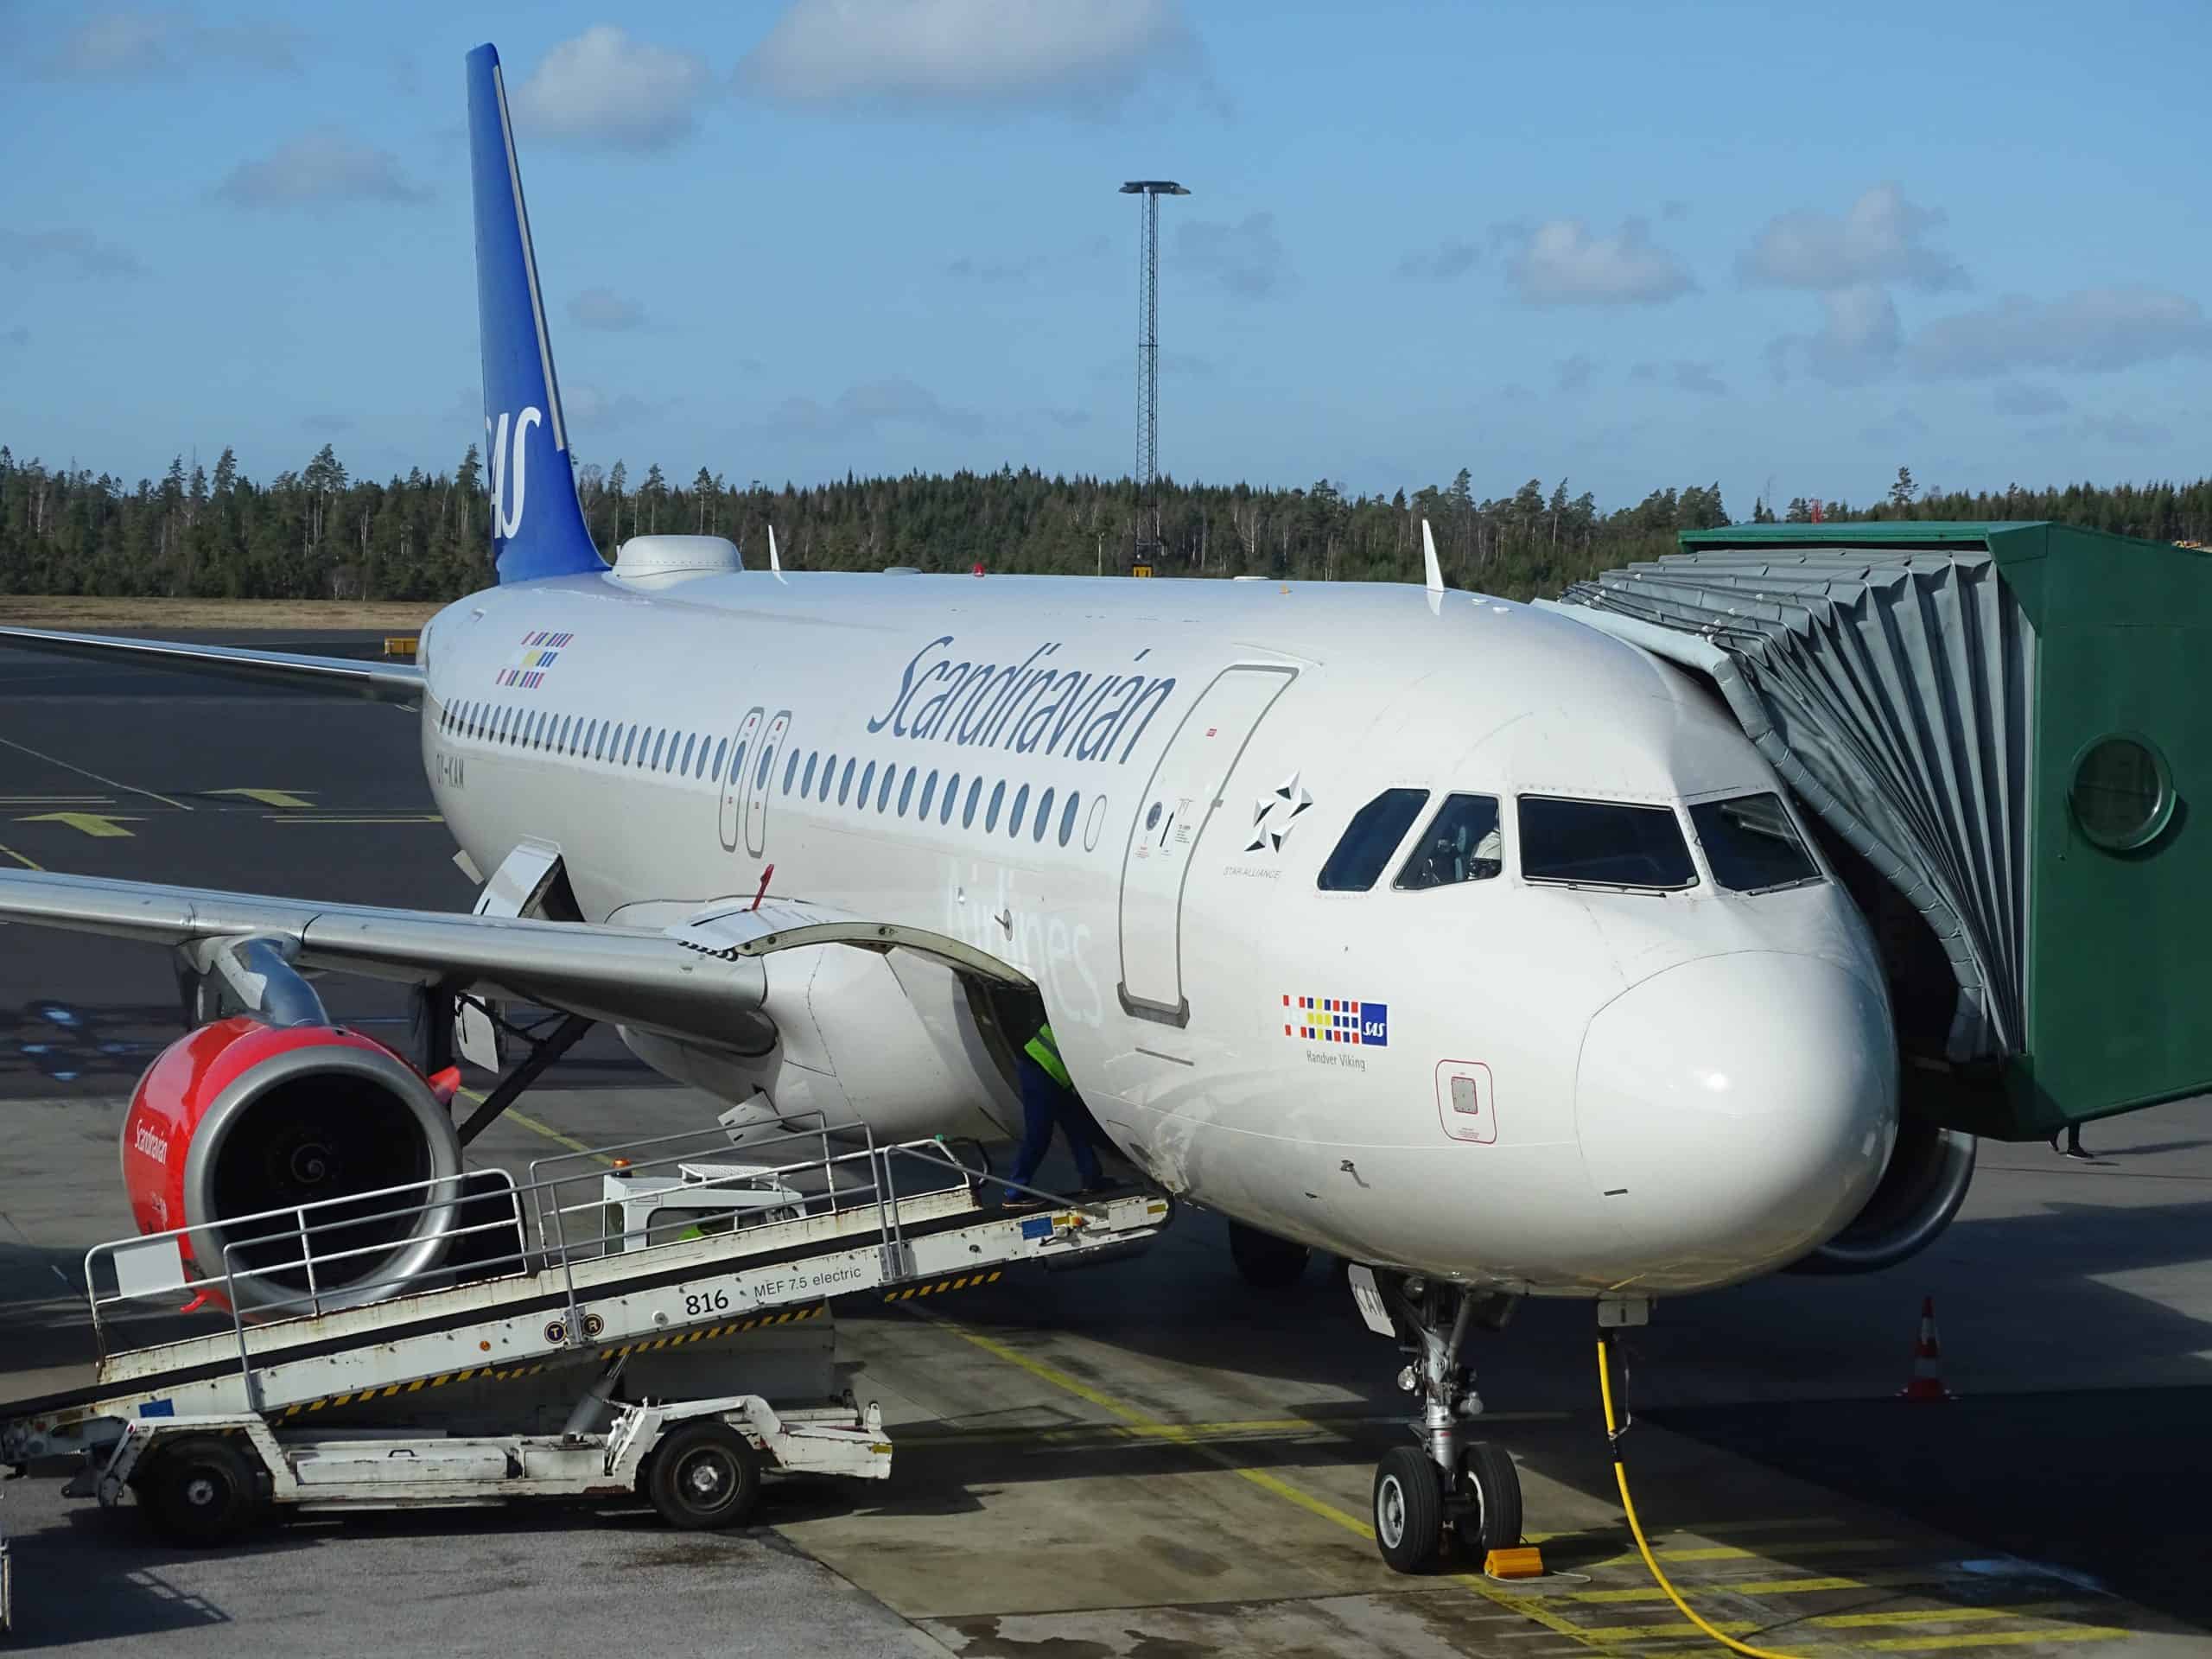 Skandinavijos oro linijų bendrovė "Scandinavian Airlines" (SAS) - išdidus Skandinaviją jungiantis oro vežėjas